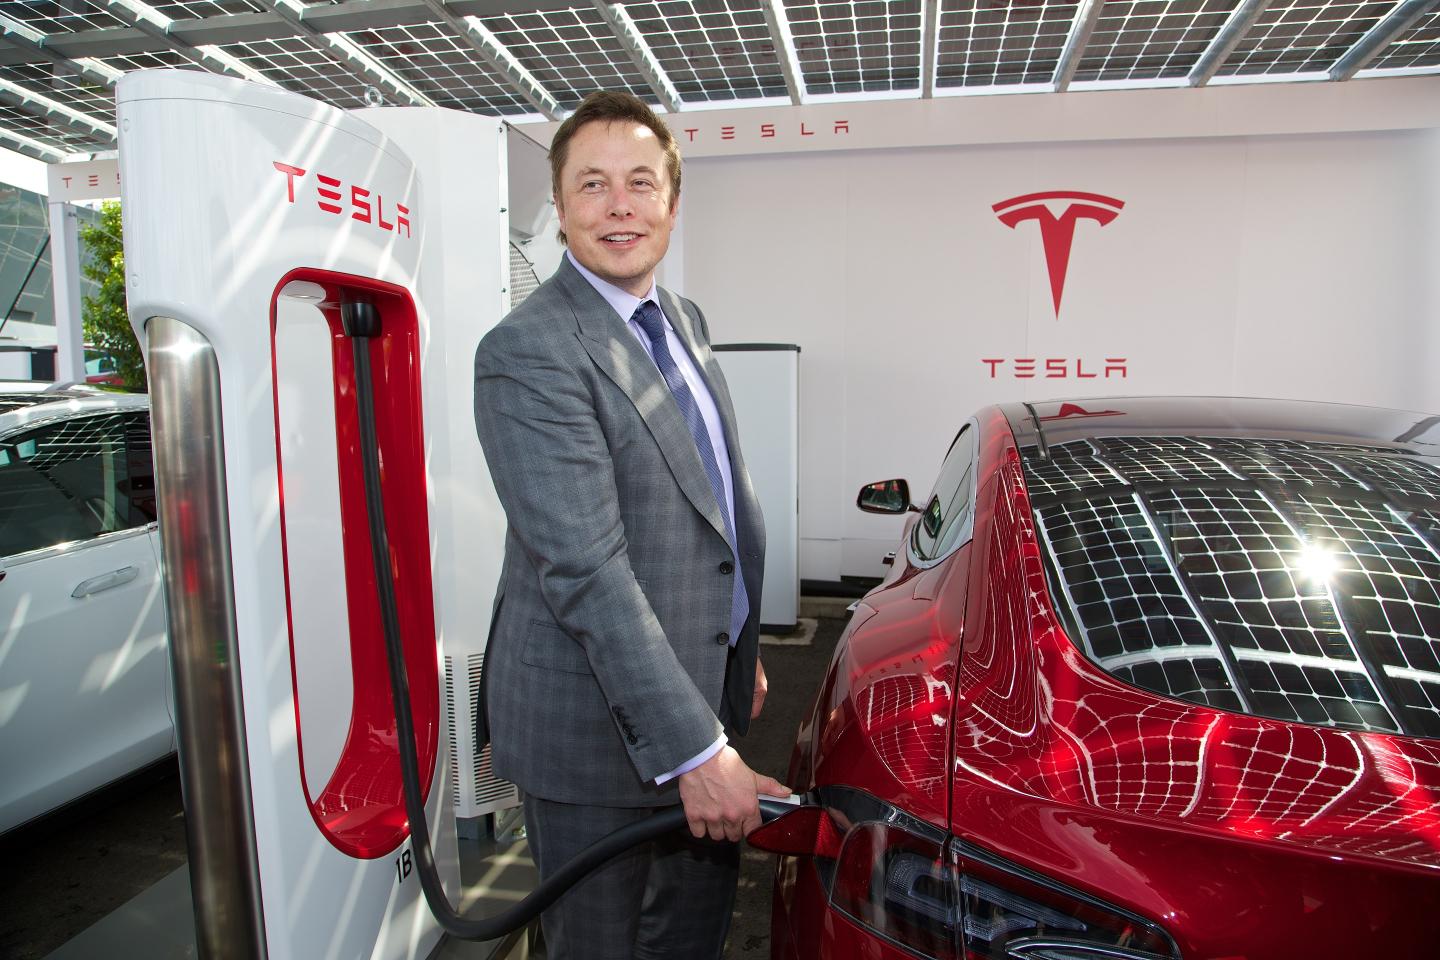 Elon Musk在投资特斯拉之前如何让他的财富？